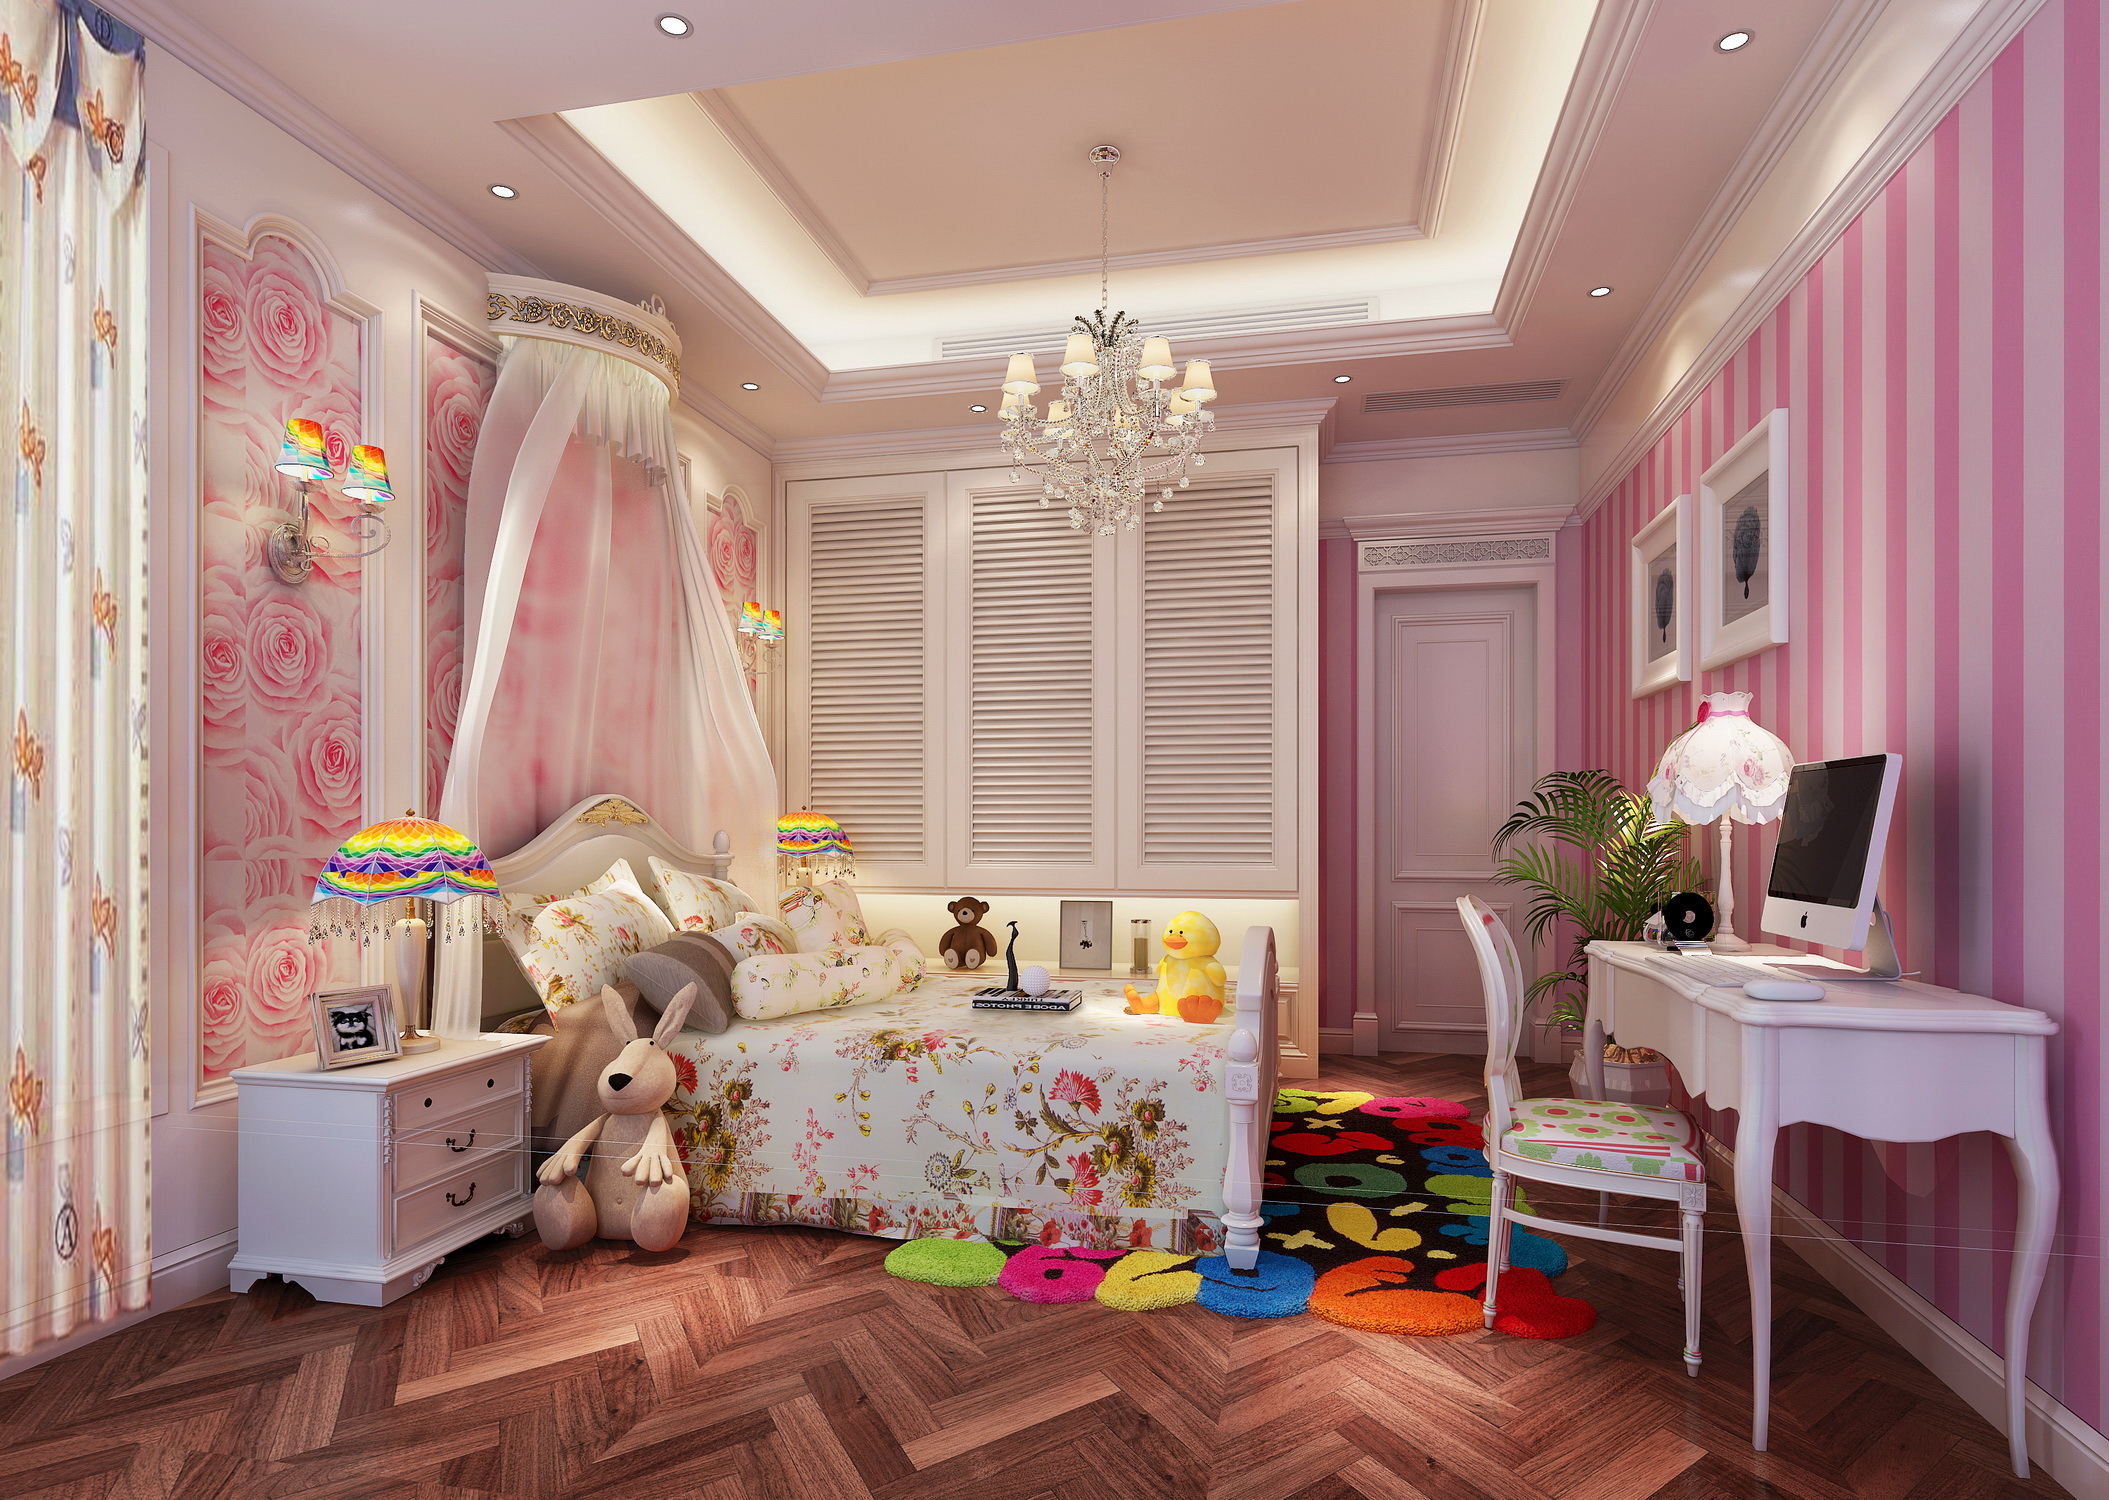 别墅 白领 简约 欧式 卧室图片来自在燕晗山居的分享